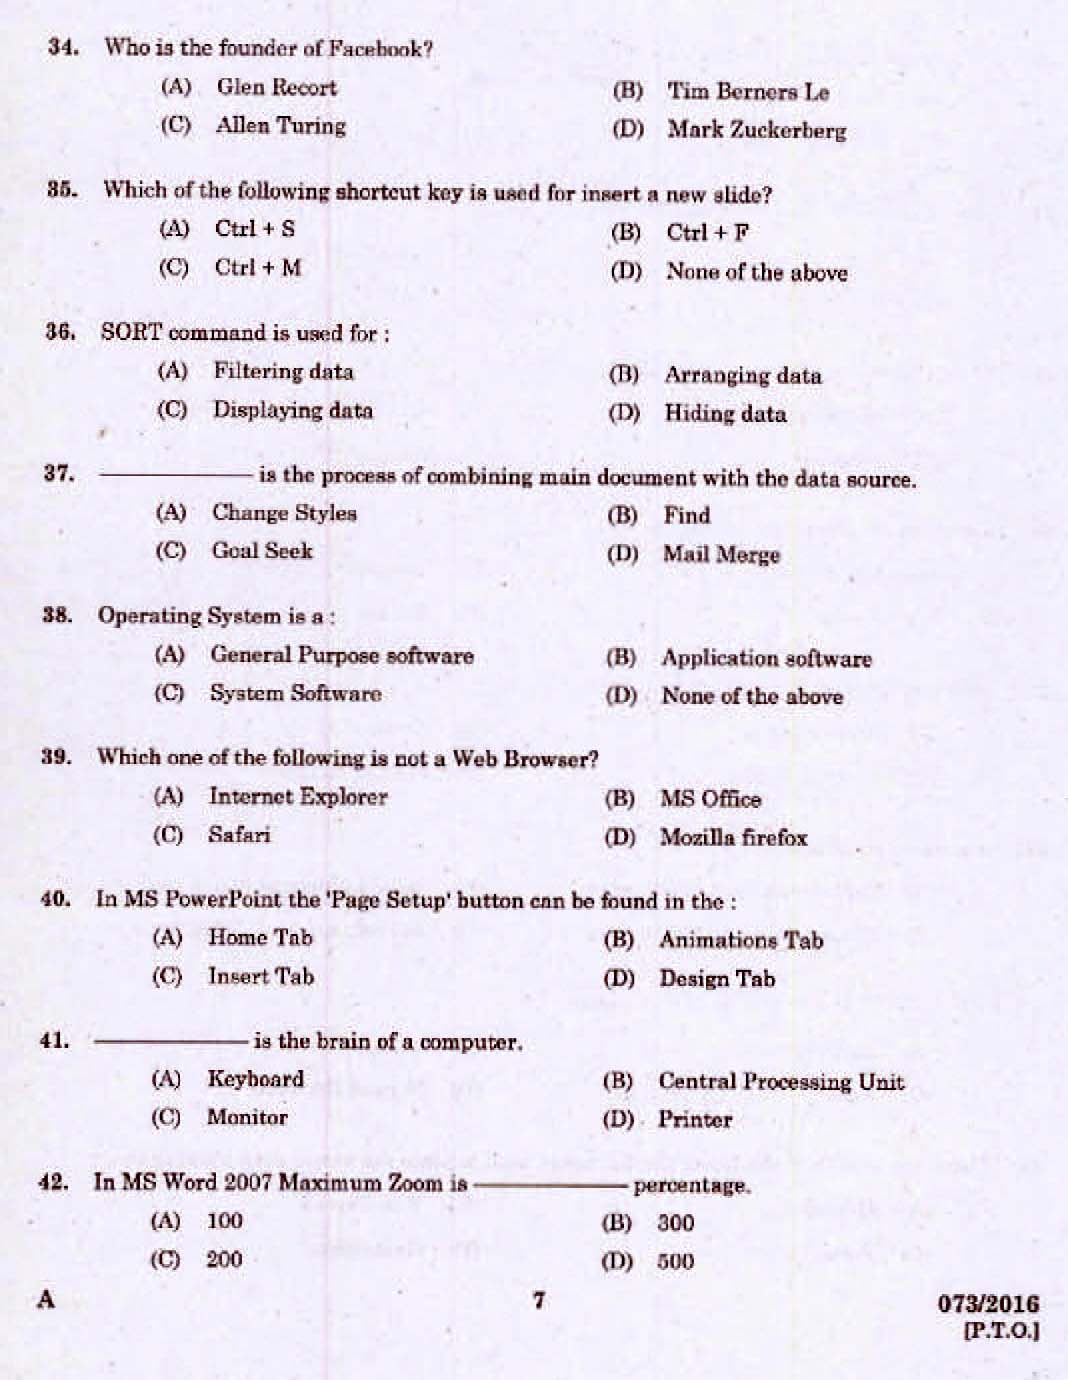 Kerala PSC Computer Assistant Grade II Exam 2016 Question Paper Code 0732016 5